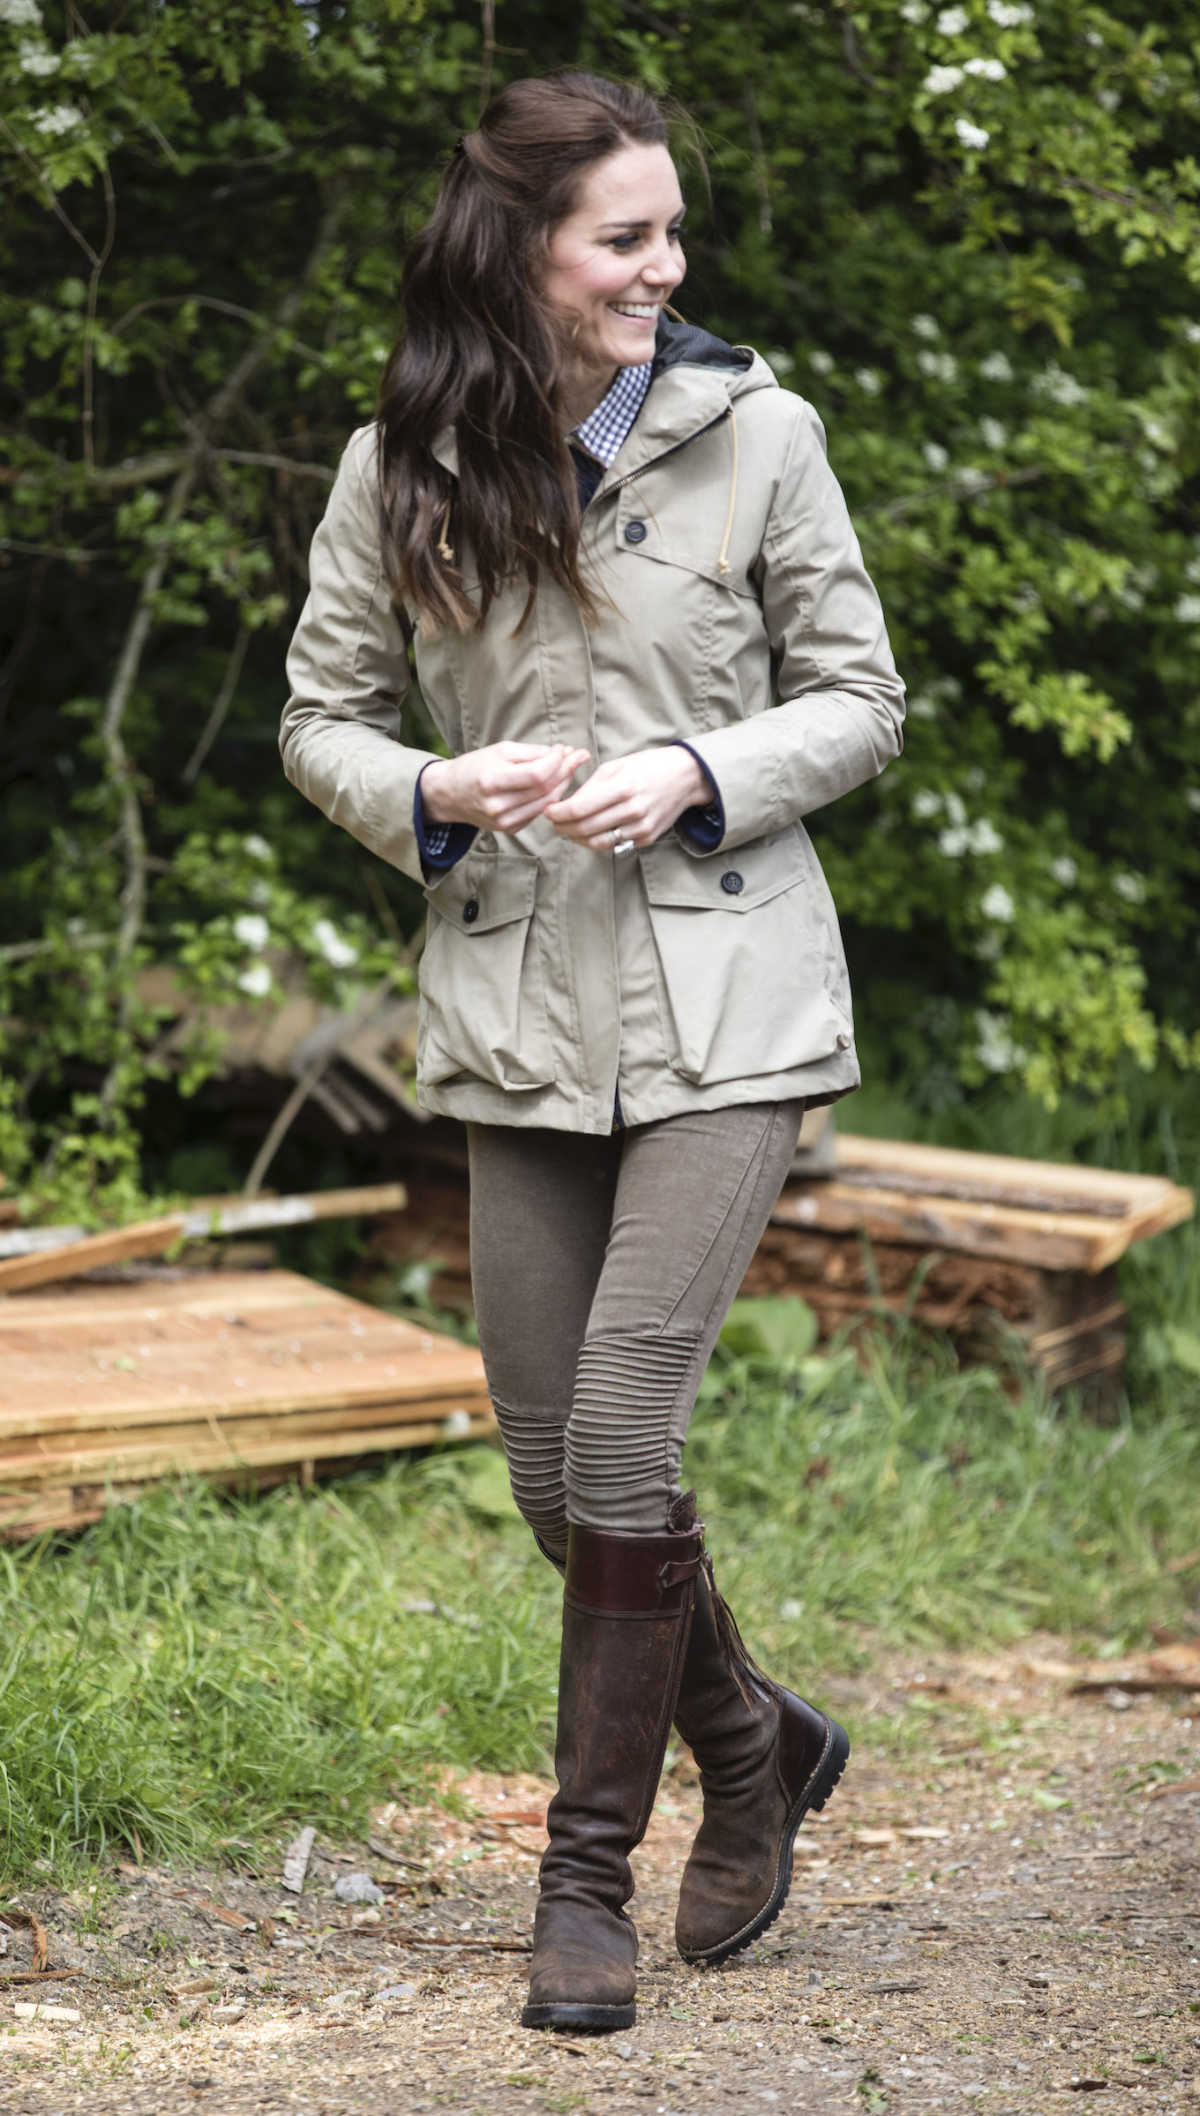 Kate Middleton at a farm